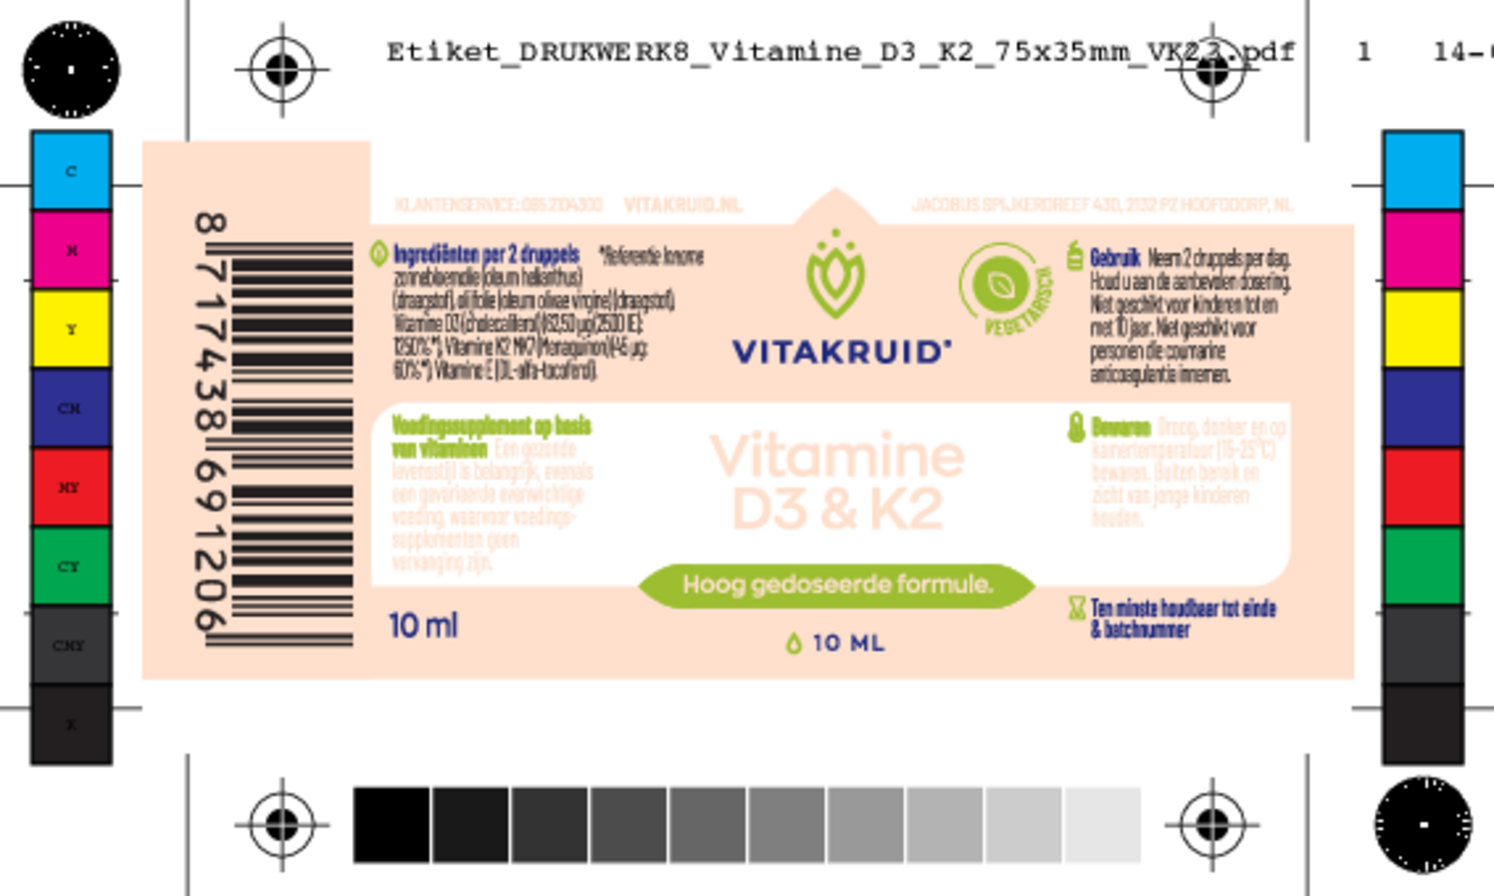 Vitamine D3 & K2 Druppels afbeelding van document #1, etiket